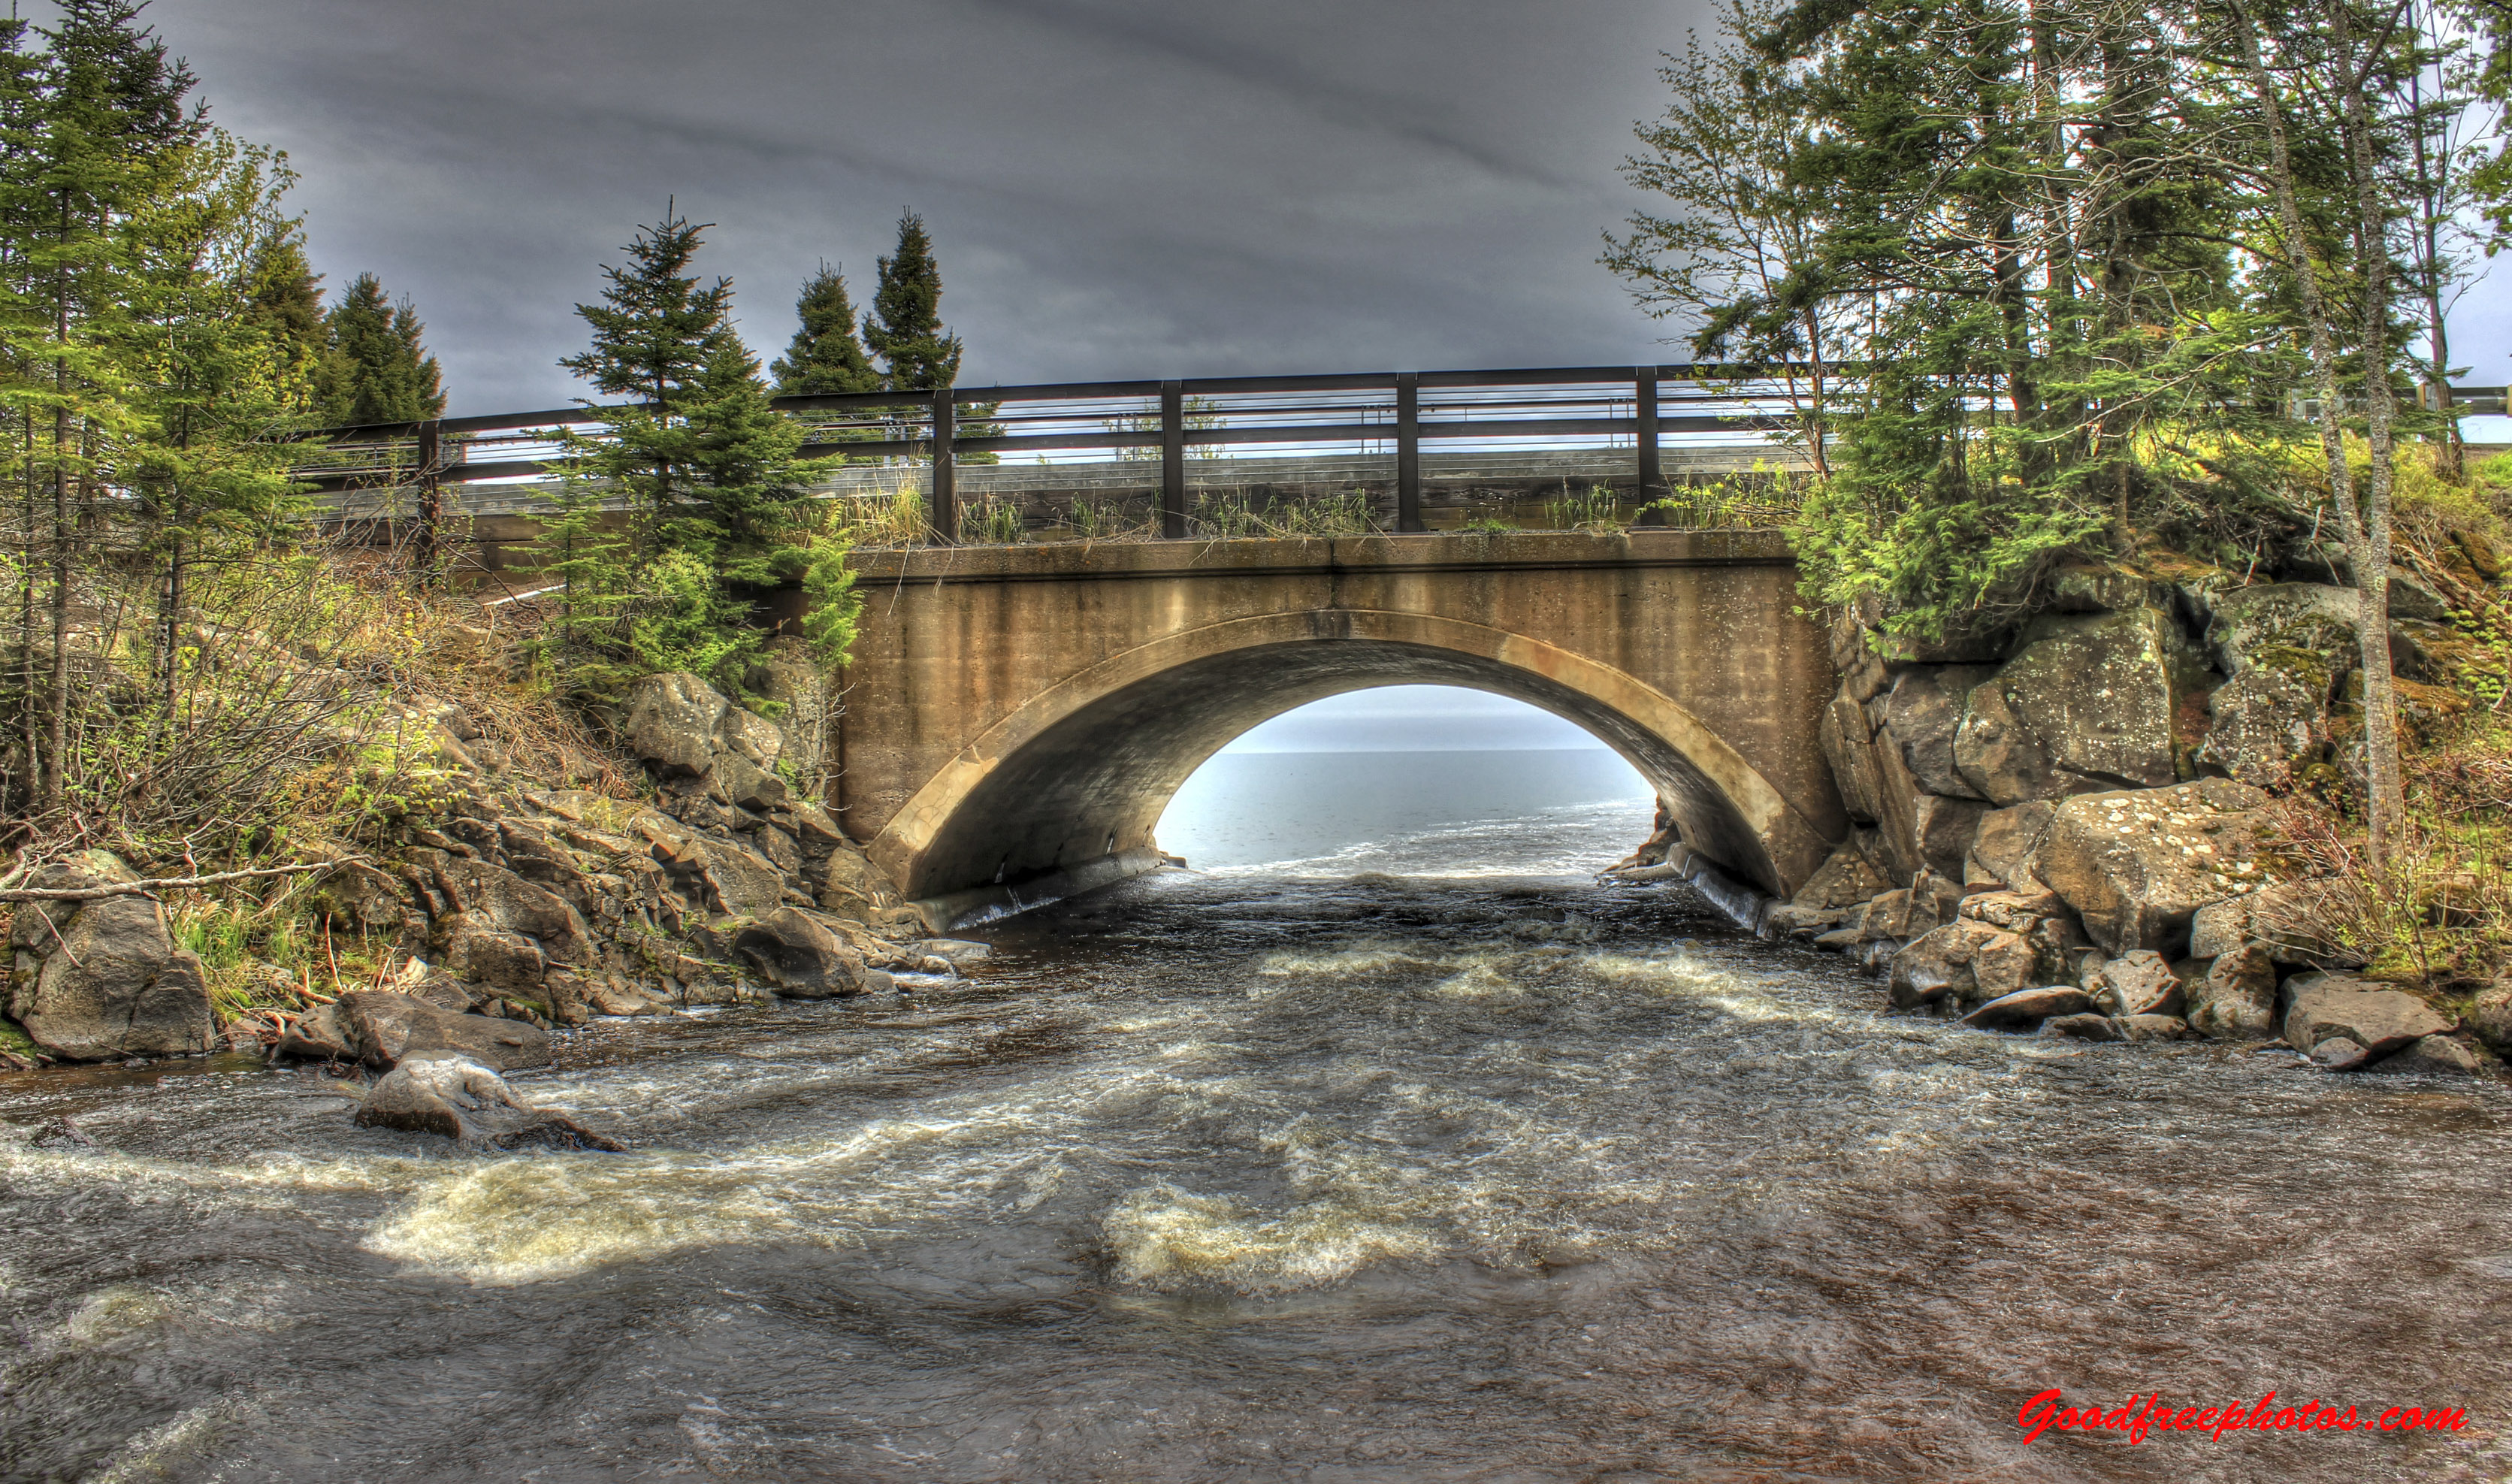 File:River-under-the-bridge.jpg - panoramio.jpg - Wikimedia Commons